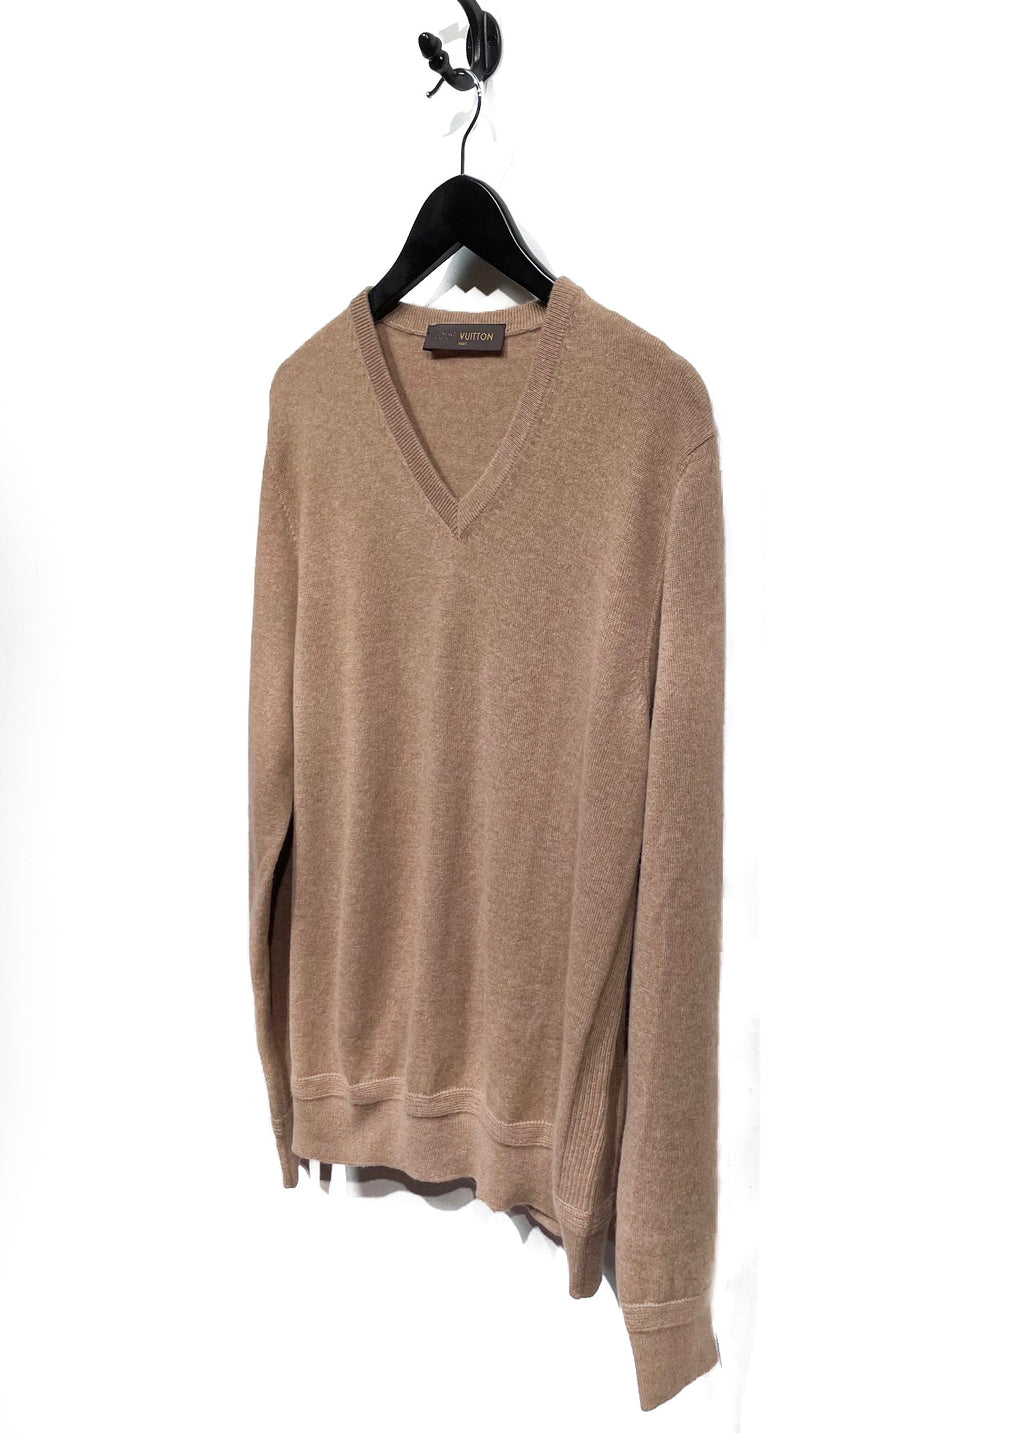 Louis Vuitton Camel Cashmere V-neck Sweater